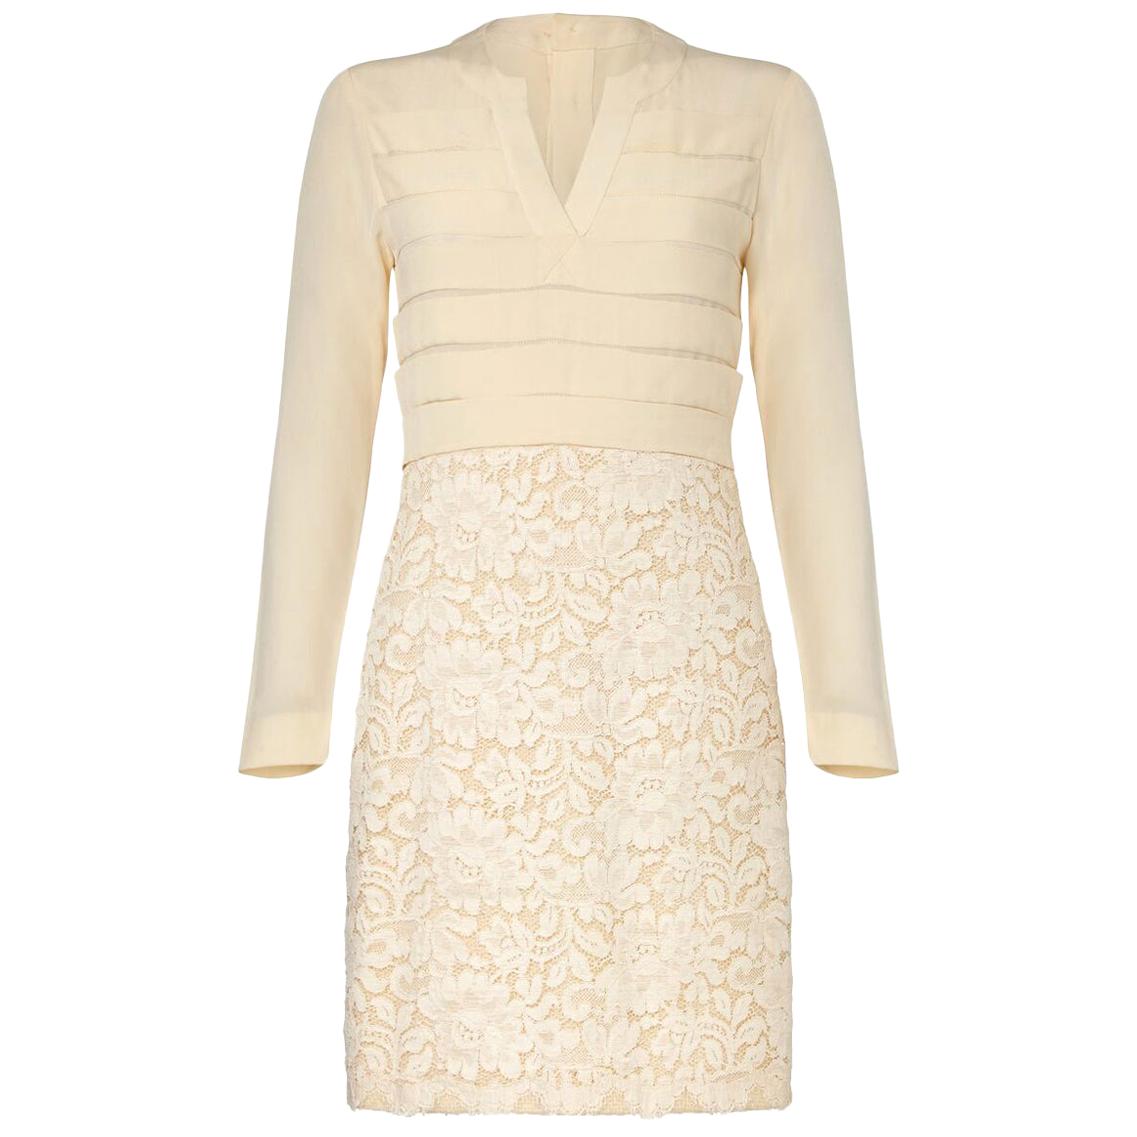 1980s Chanel Haute Couture Bridal Cream lace Dress Suit